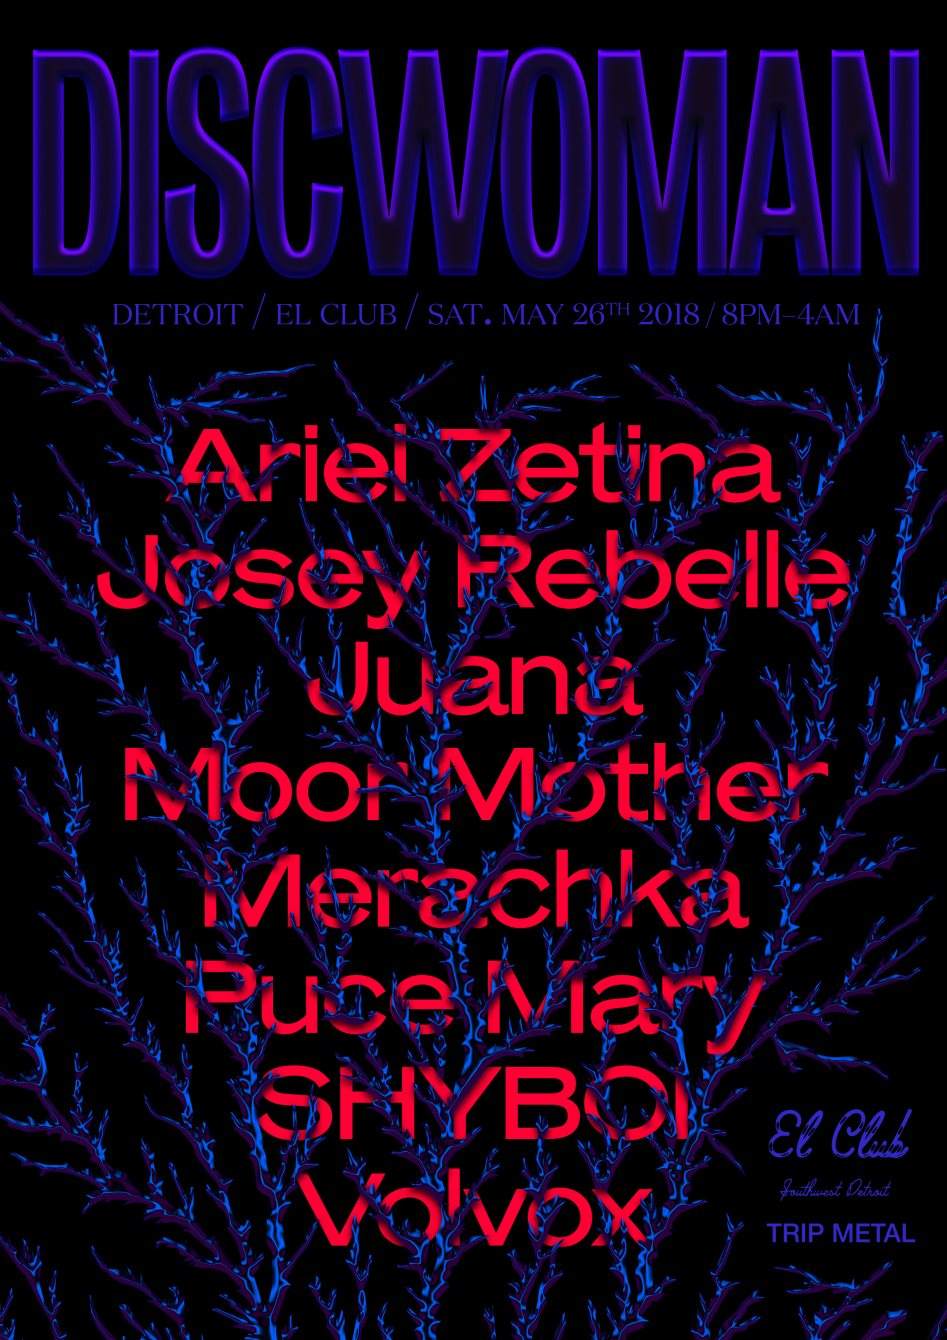 Discwoman Detroit - フライヤー表